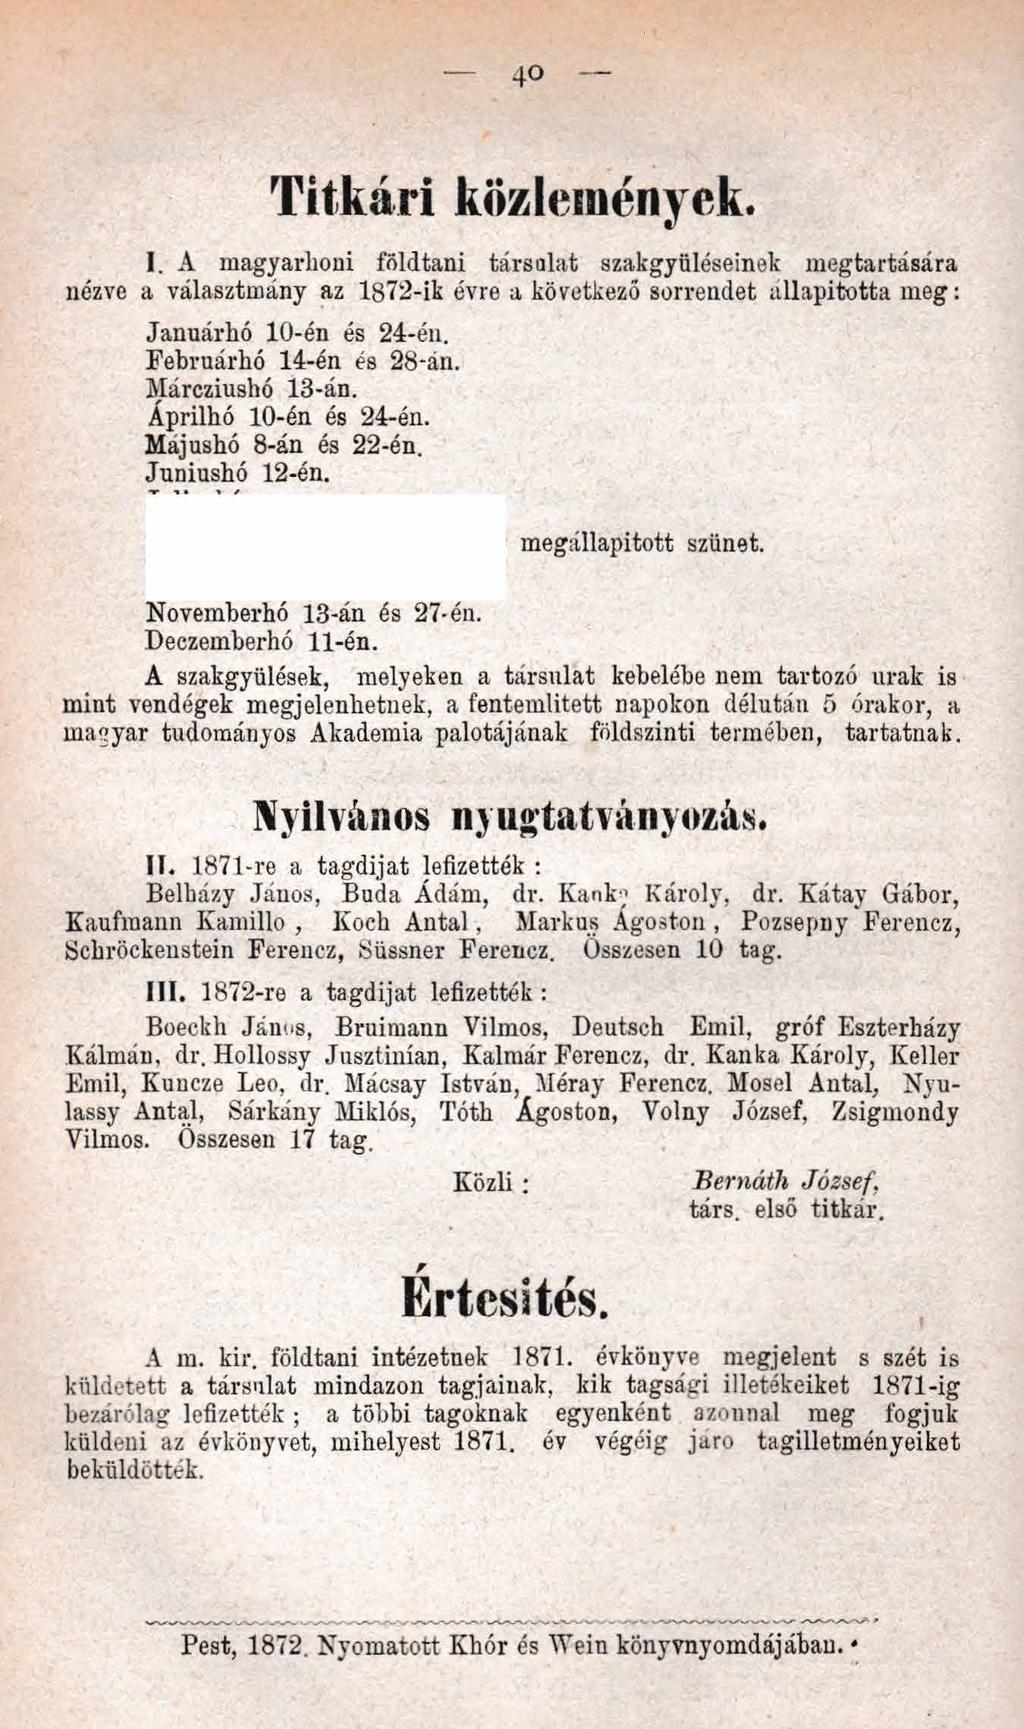 4o T itkári közlemények. I. A magyarhoni földtani társalat szakgyüléseinek megtartásá nézve a választmány az 1872-ik évre a következő sorrendet állapította meg: Januárhó 10-én és 24-én.